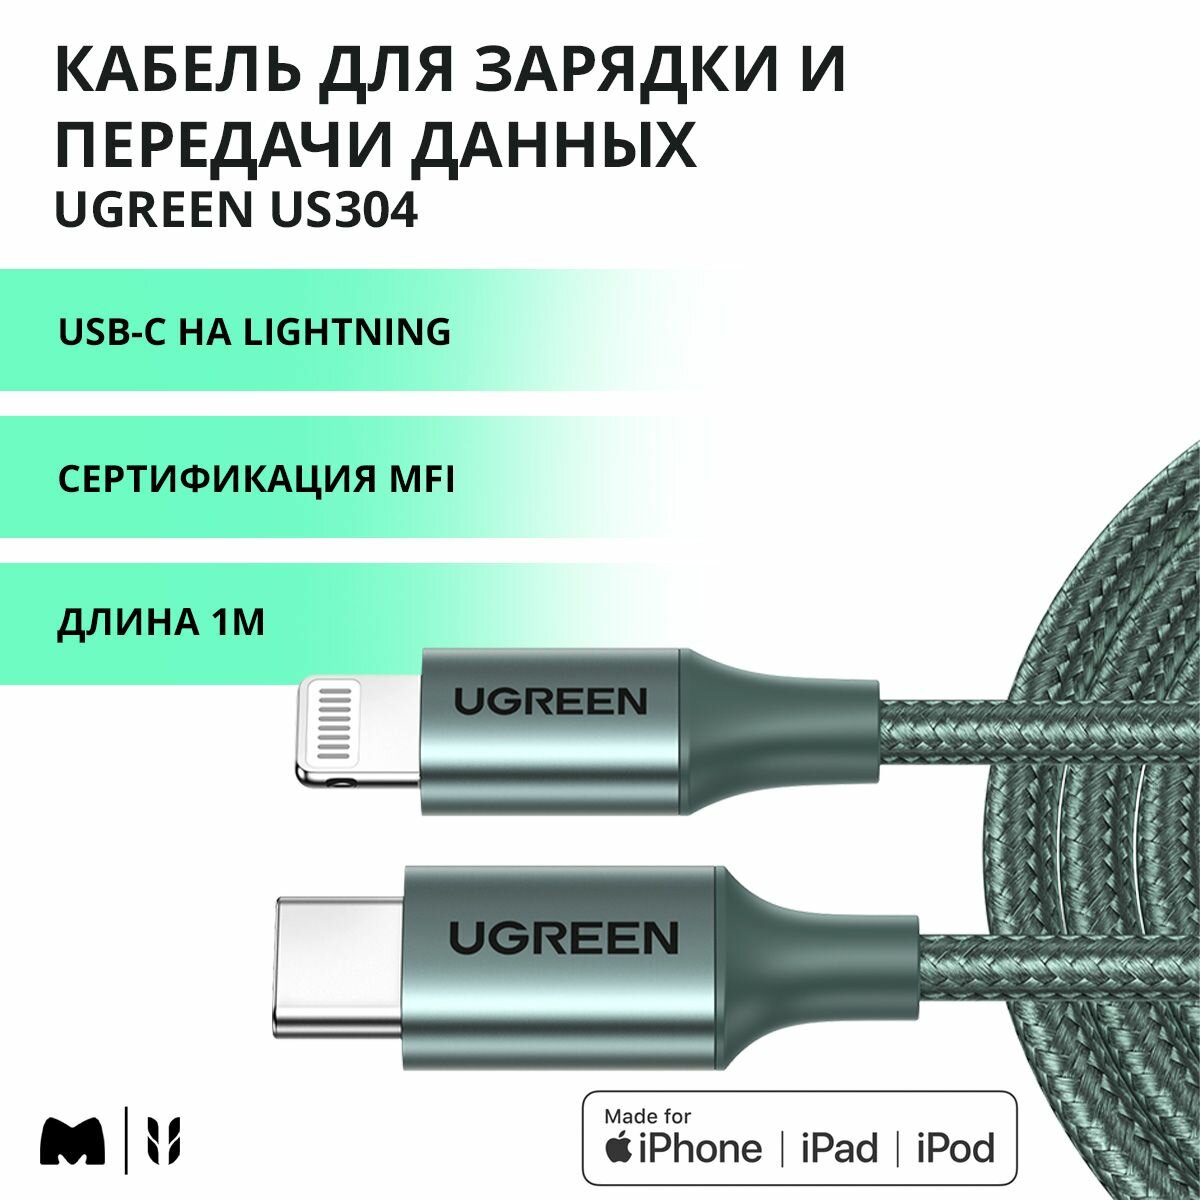 Кабель для быстрой зарядки и передачи данных UGREEN US304 / USB-C на Lightning / MFi сертификат / Длина 1м / цвет темно-зеленый (80564)